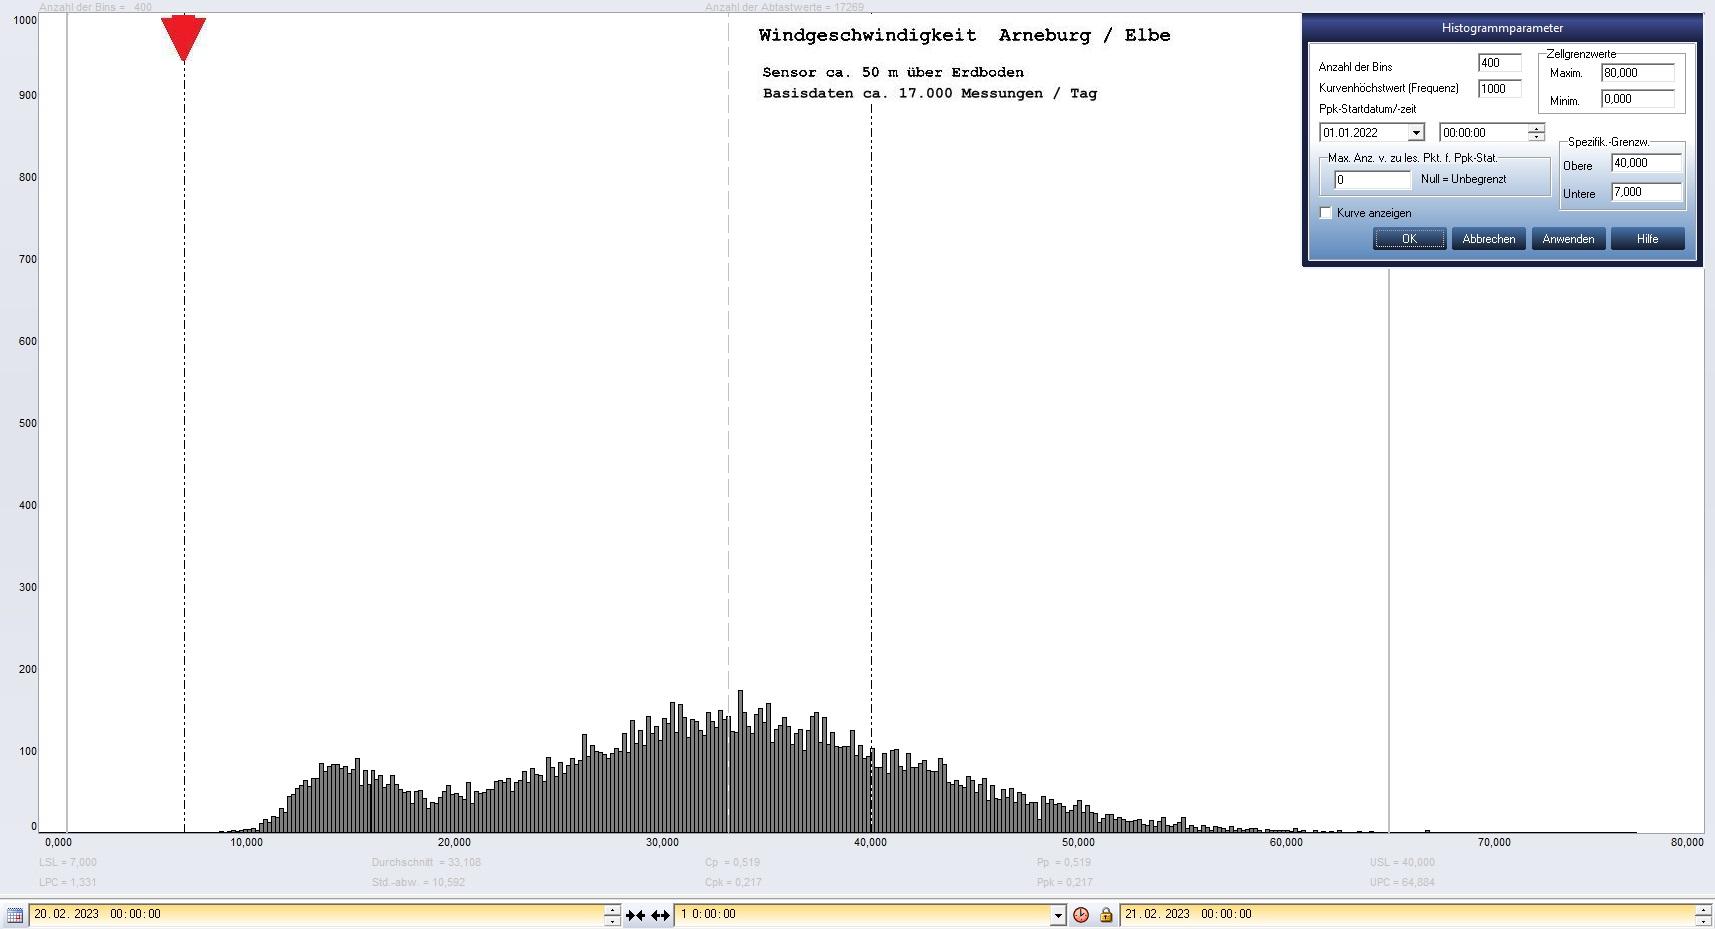 Arneburg Tages-Histogramm Winddaten, 20.02.2023
  Histogramm, Sensor auf Gebäude, ca. 50 m über Erdboden, Basis: 5s-Aufzeichnung